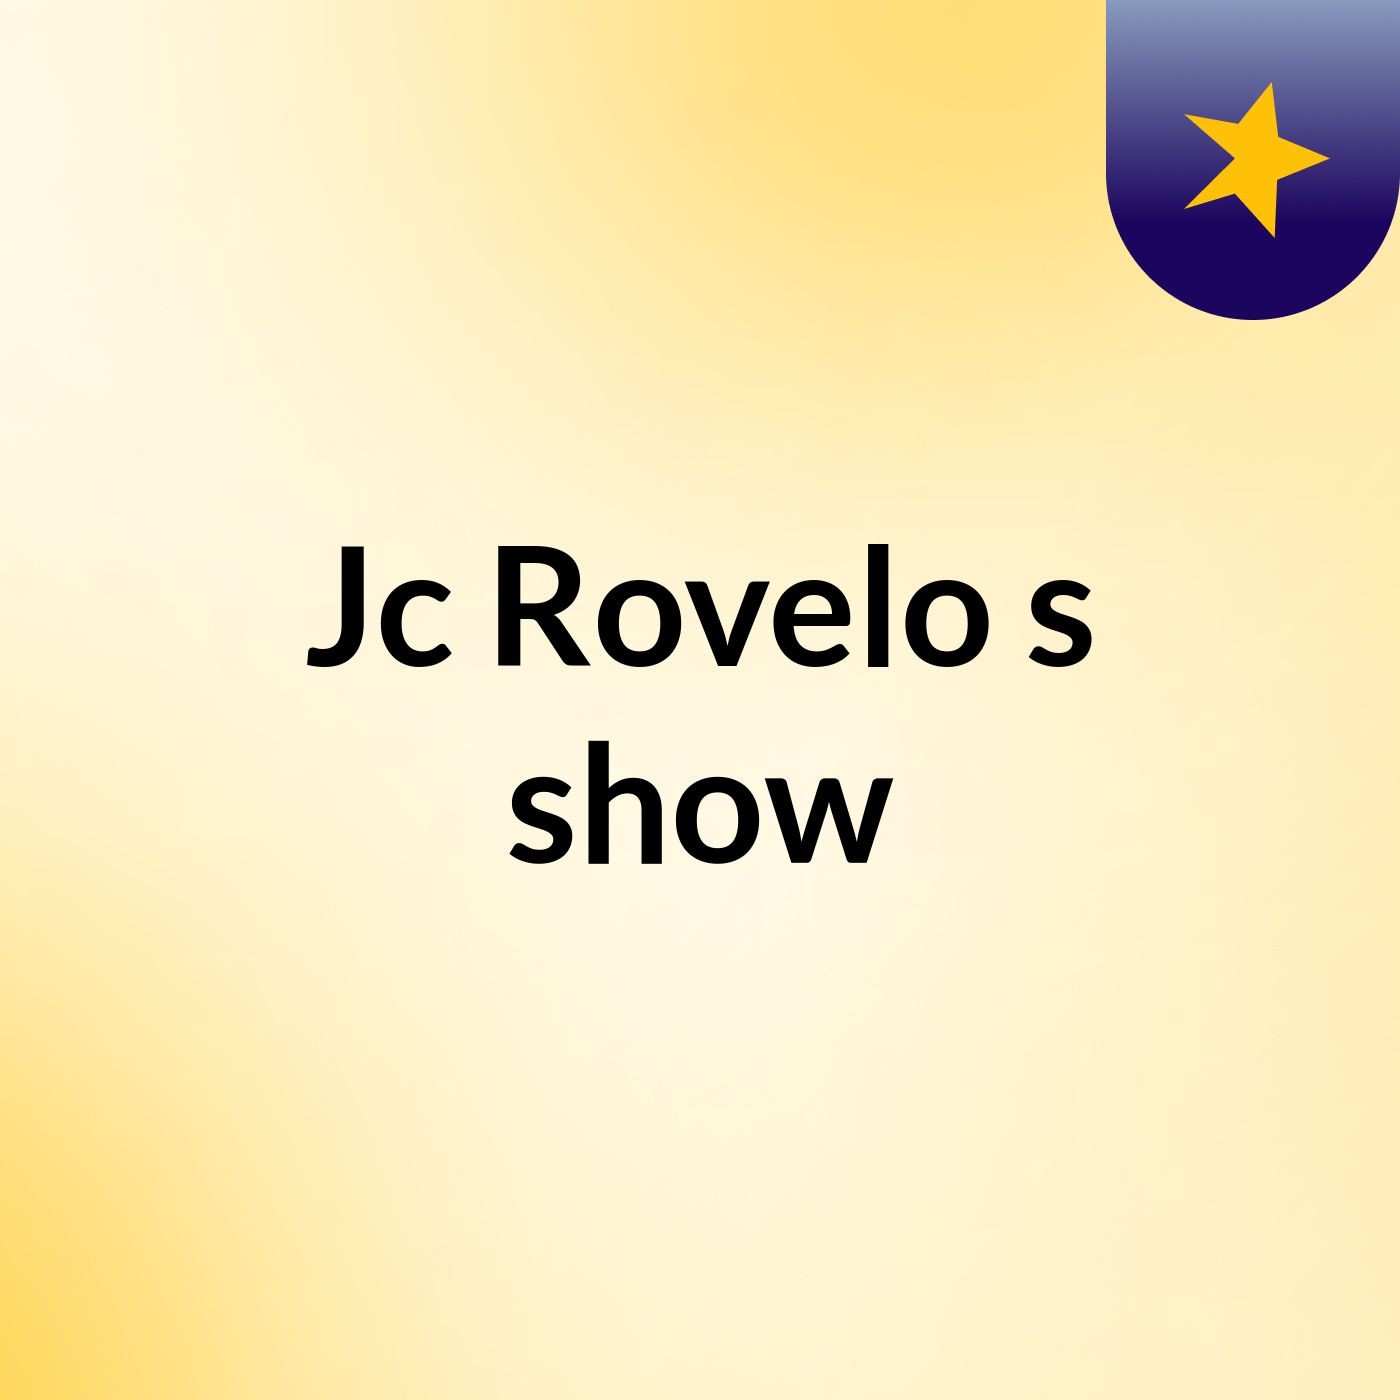 Jc Rovelo's show